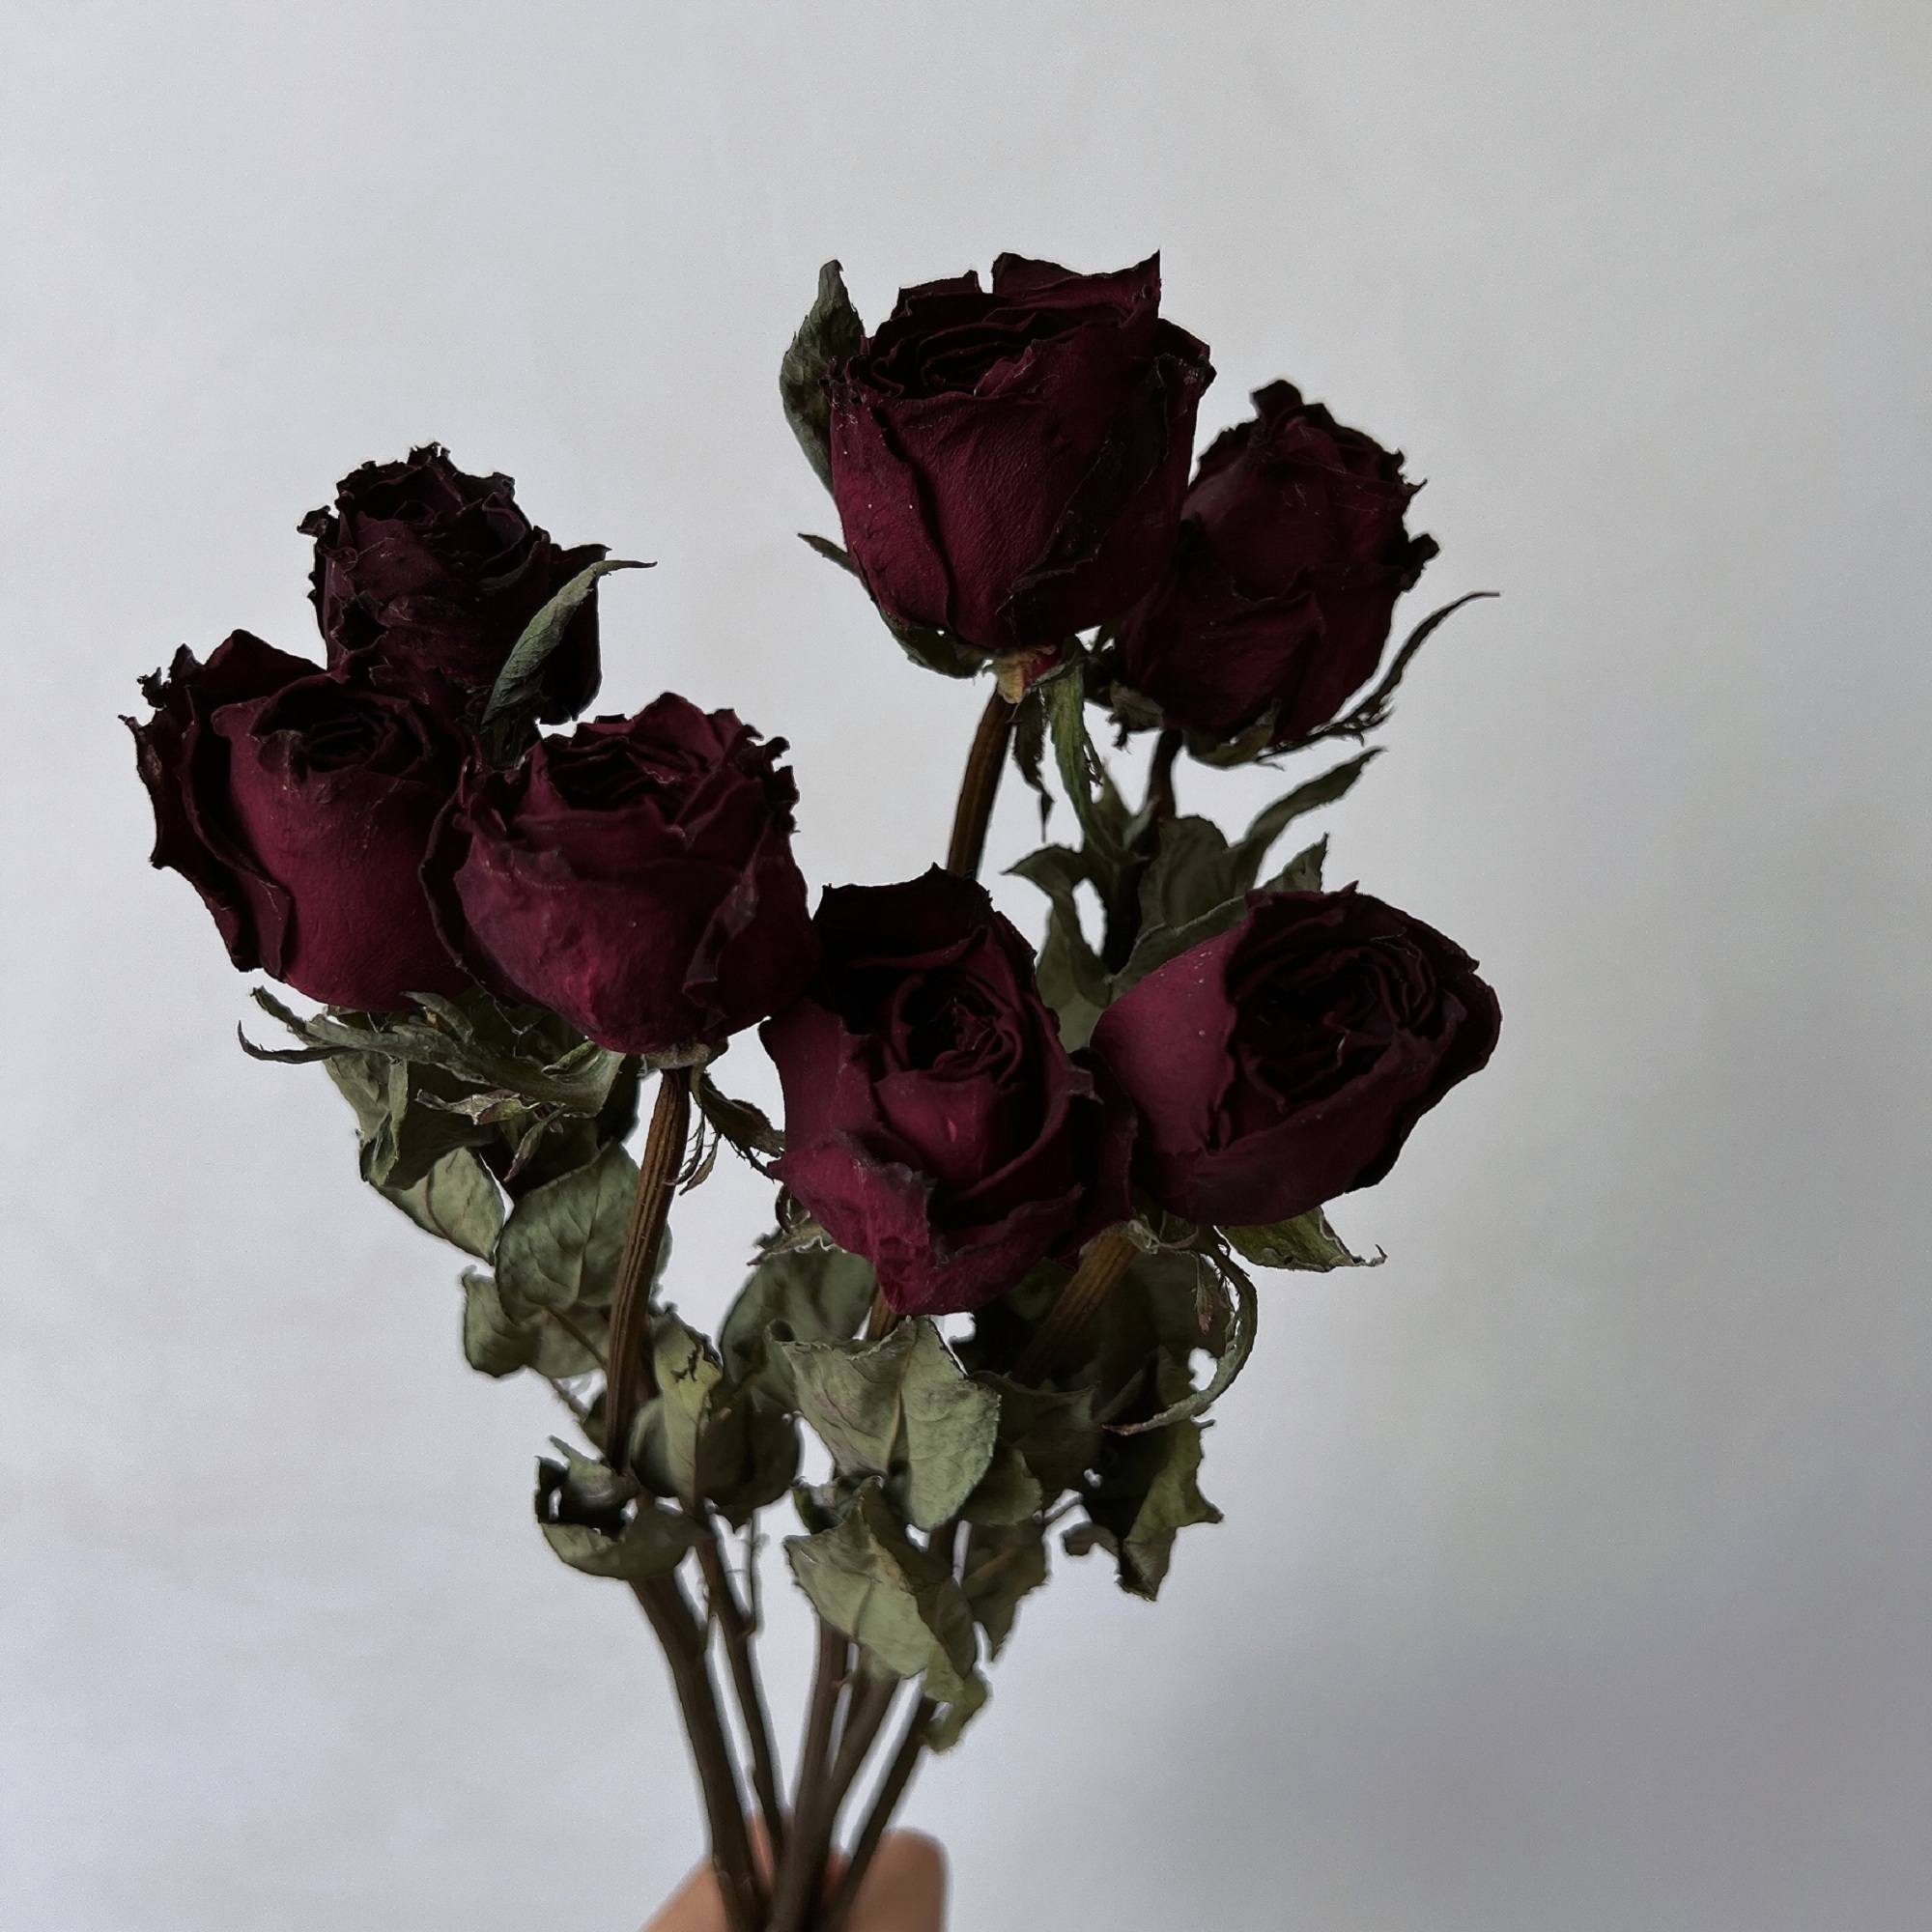 天然真花黑玫瑰干花花束黑魔术家居插花装饰摆件暗黑风拍摄道具